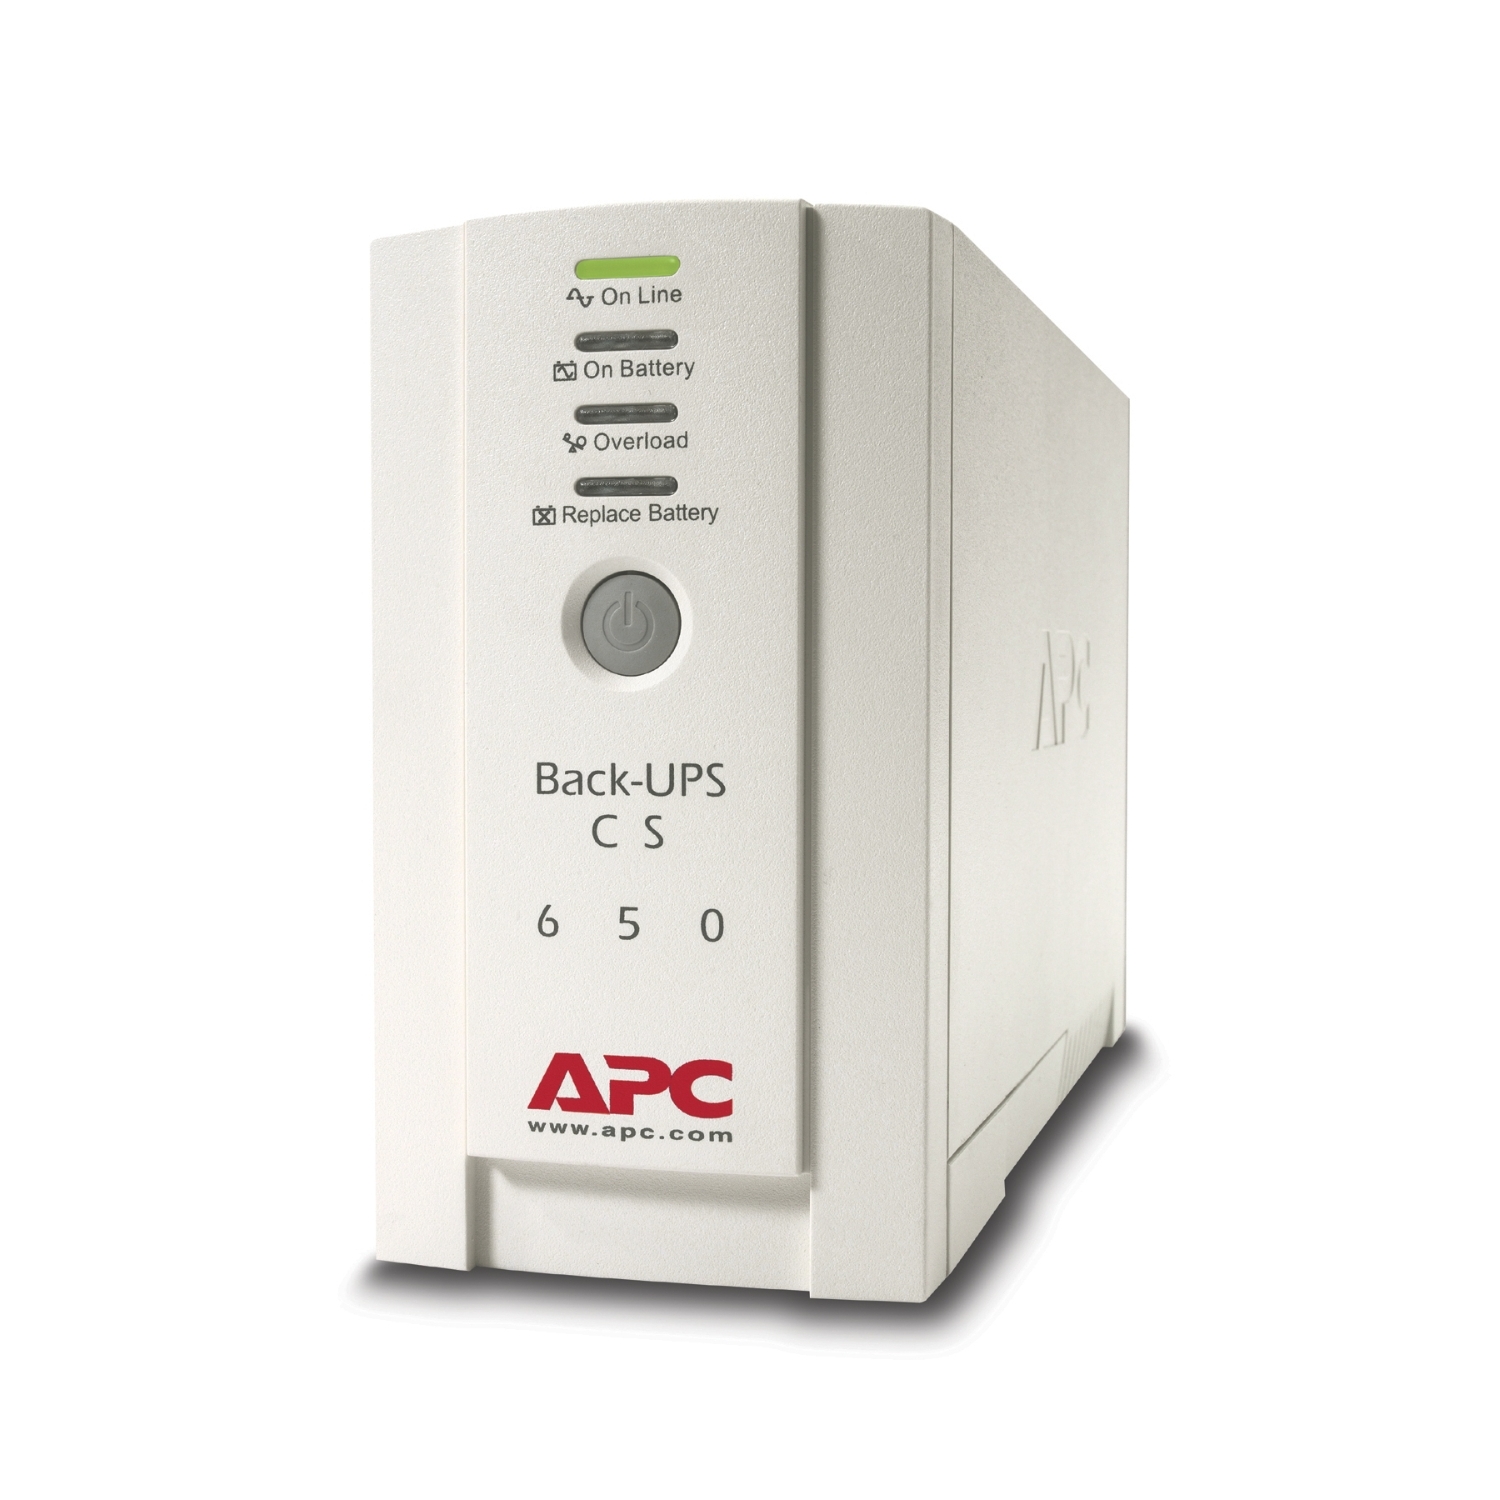 Onduleur pour PC Professionnel Bureautique Domestique avec Stabilisateur de  tension APC BX650LI (BX650LI) à 748,92 MAD - linksol